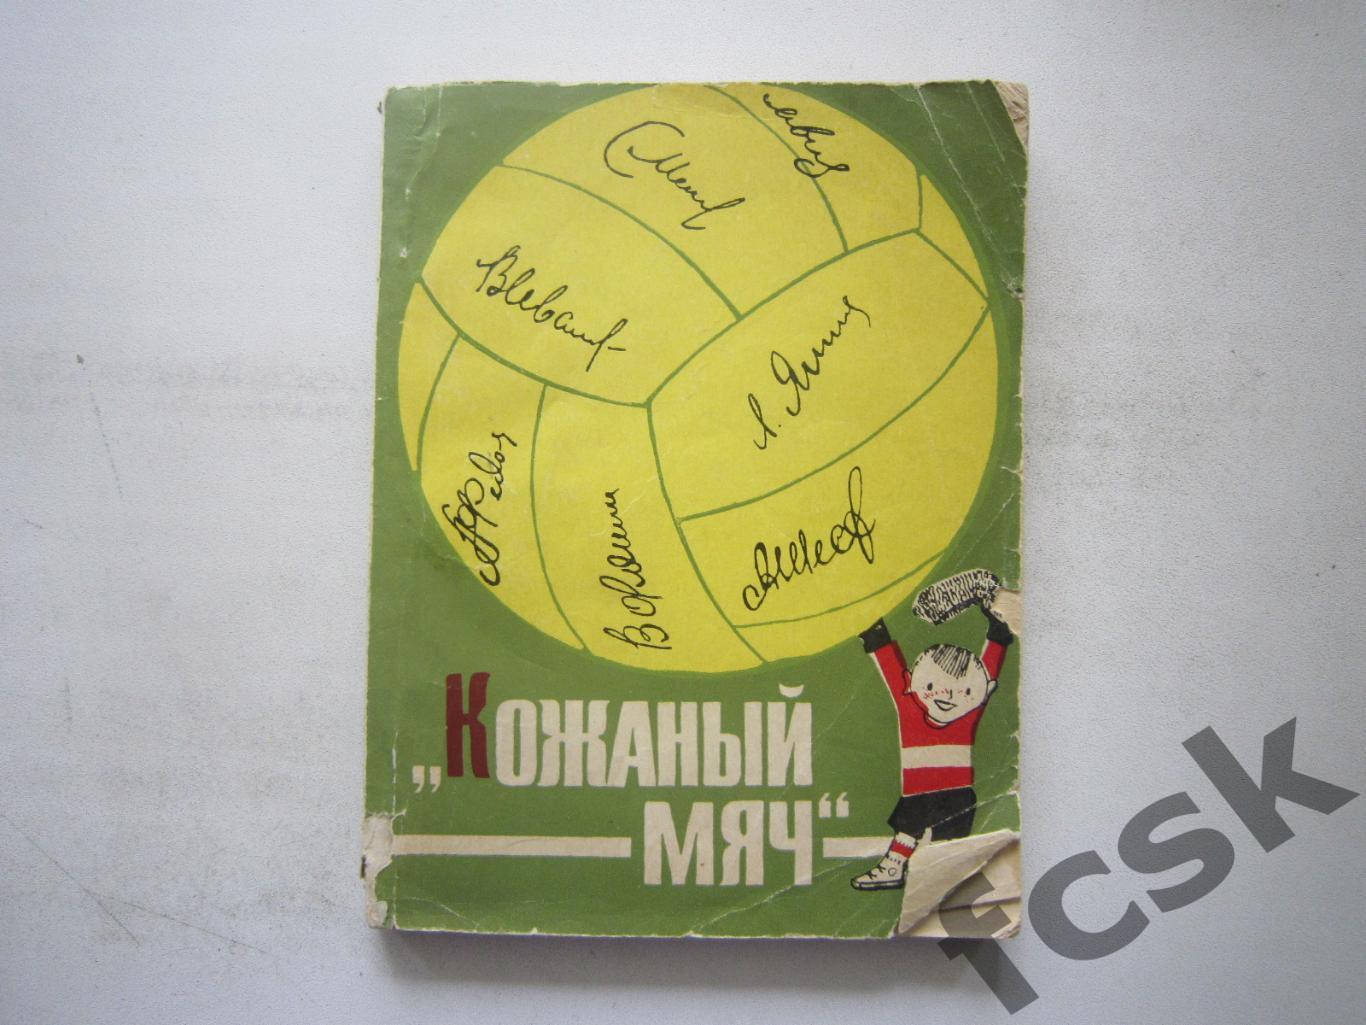 Кожаный мяч Молодая гвардия 1966 (*)